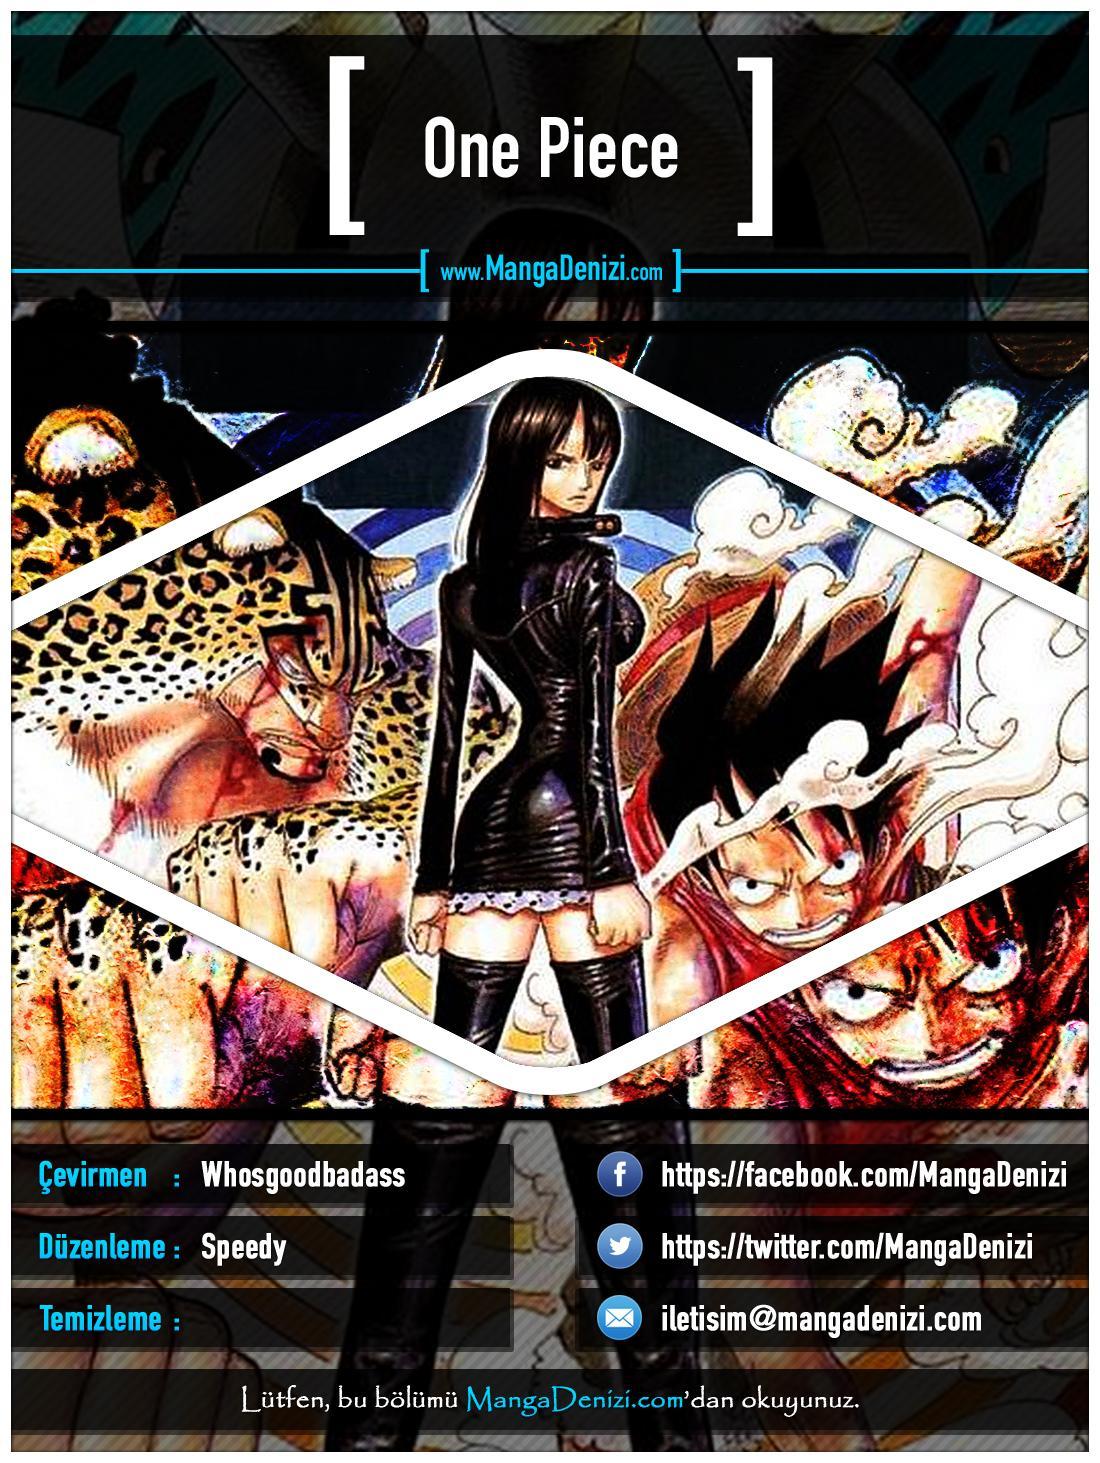 One Piece [Renkli] mangasının 0387 bölümünün 1. sayfasını okuyorsunuz.